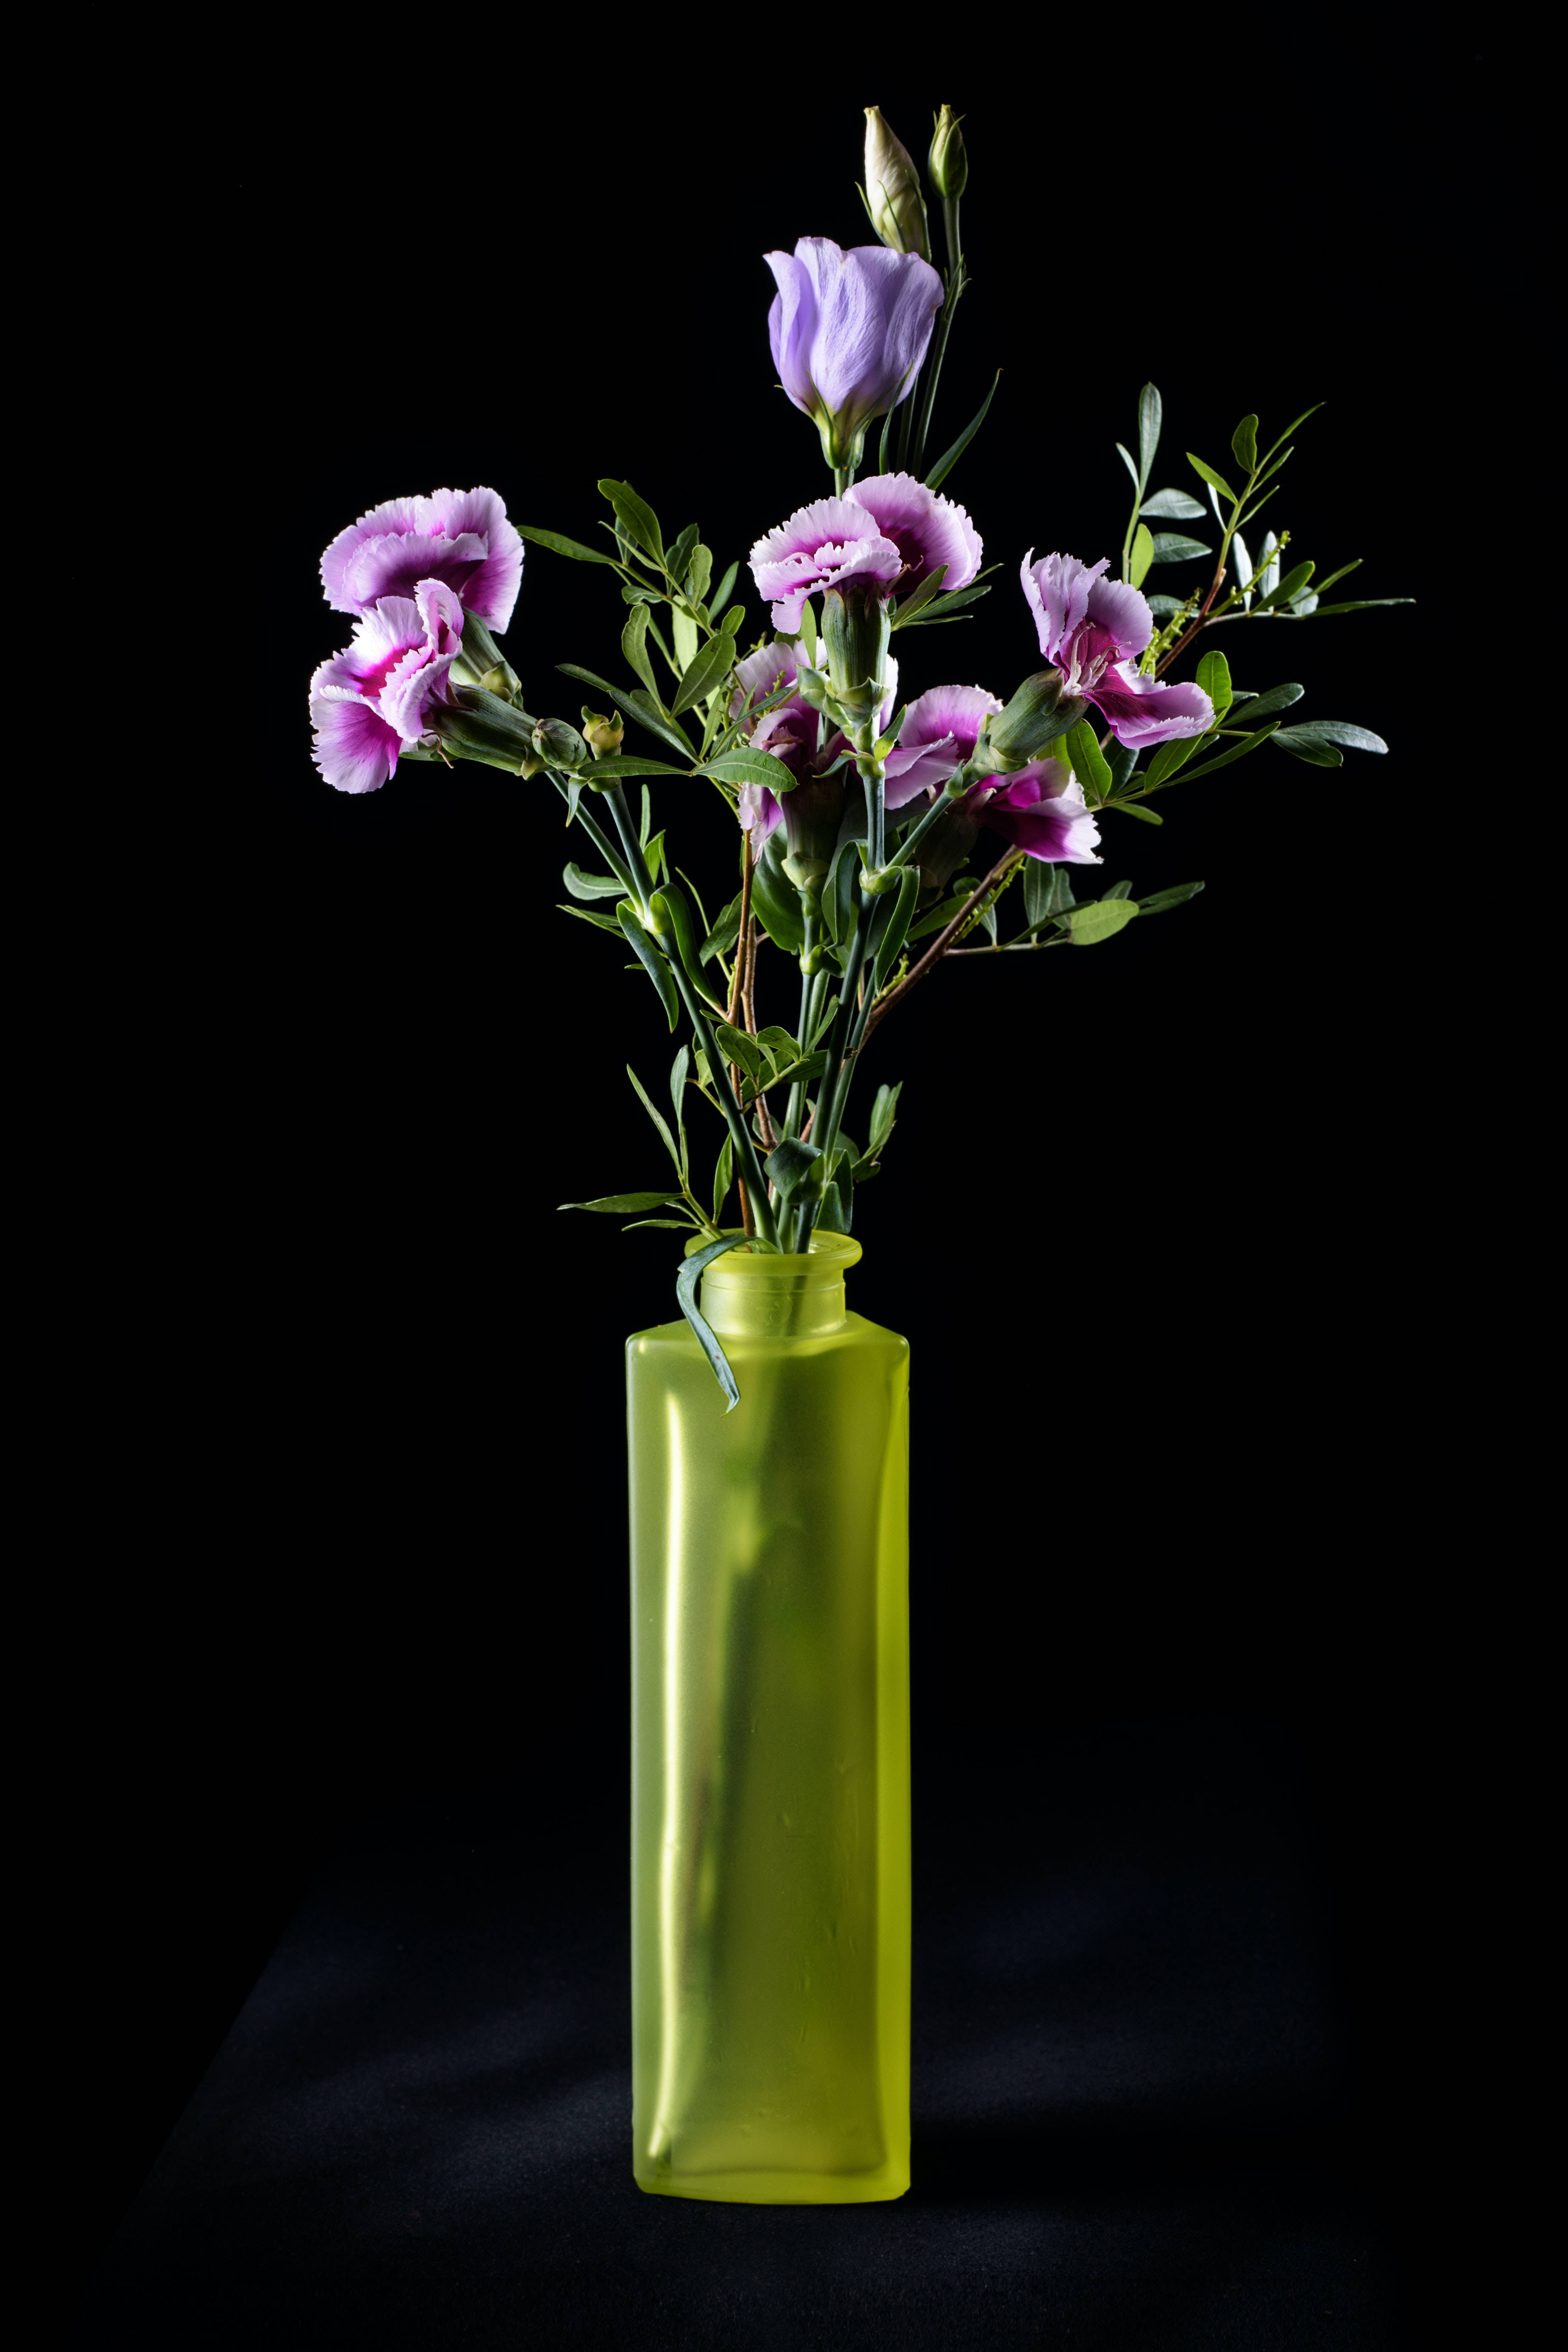 Flowers In Vase Black And Purple Phone Wallpaper